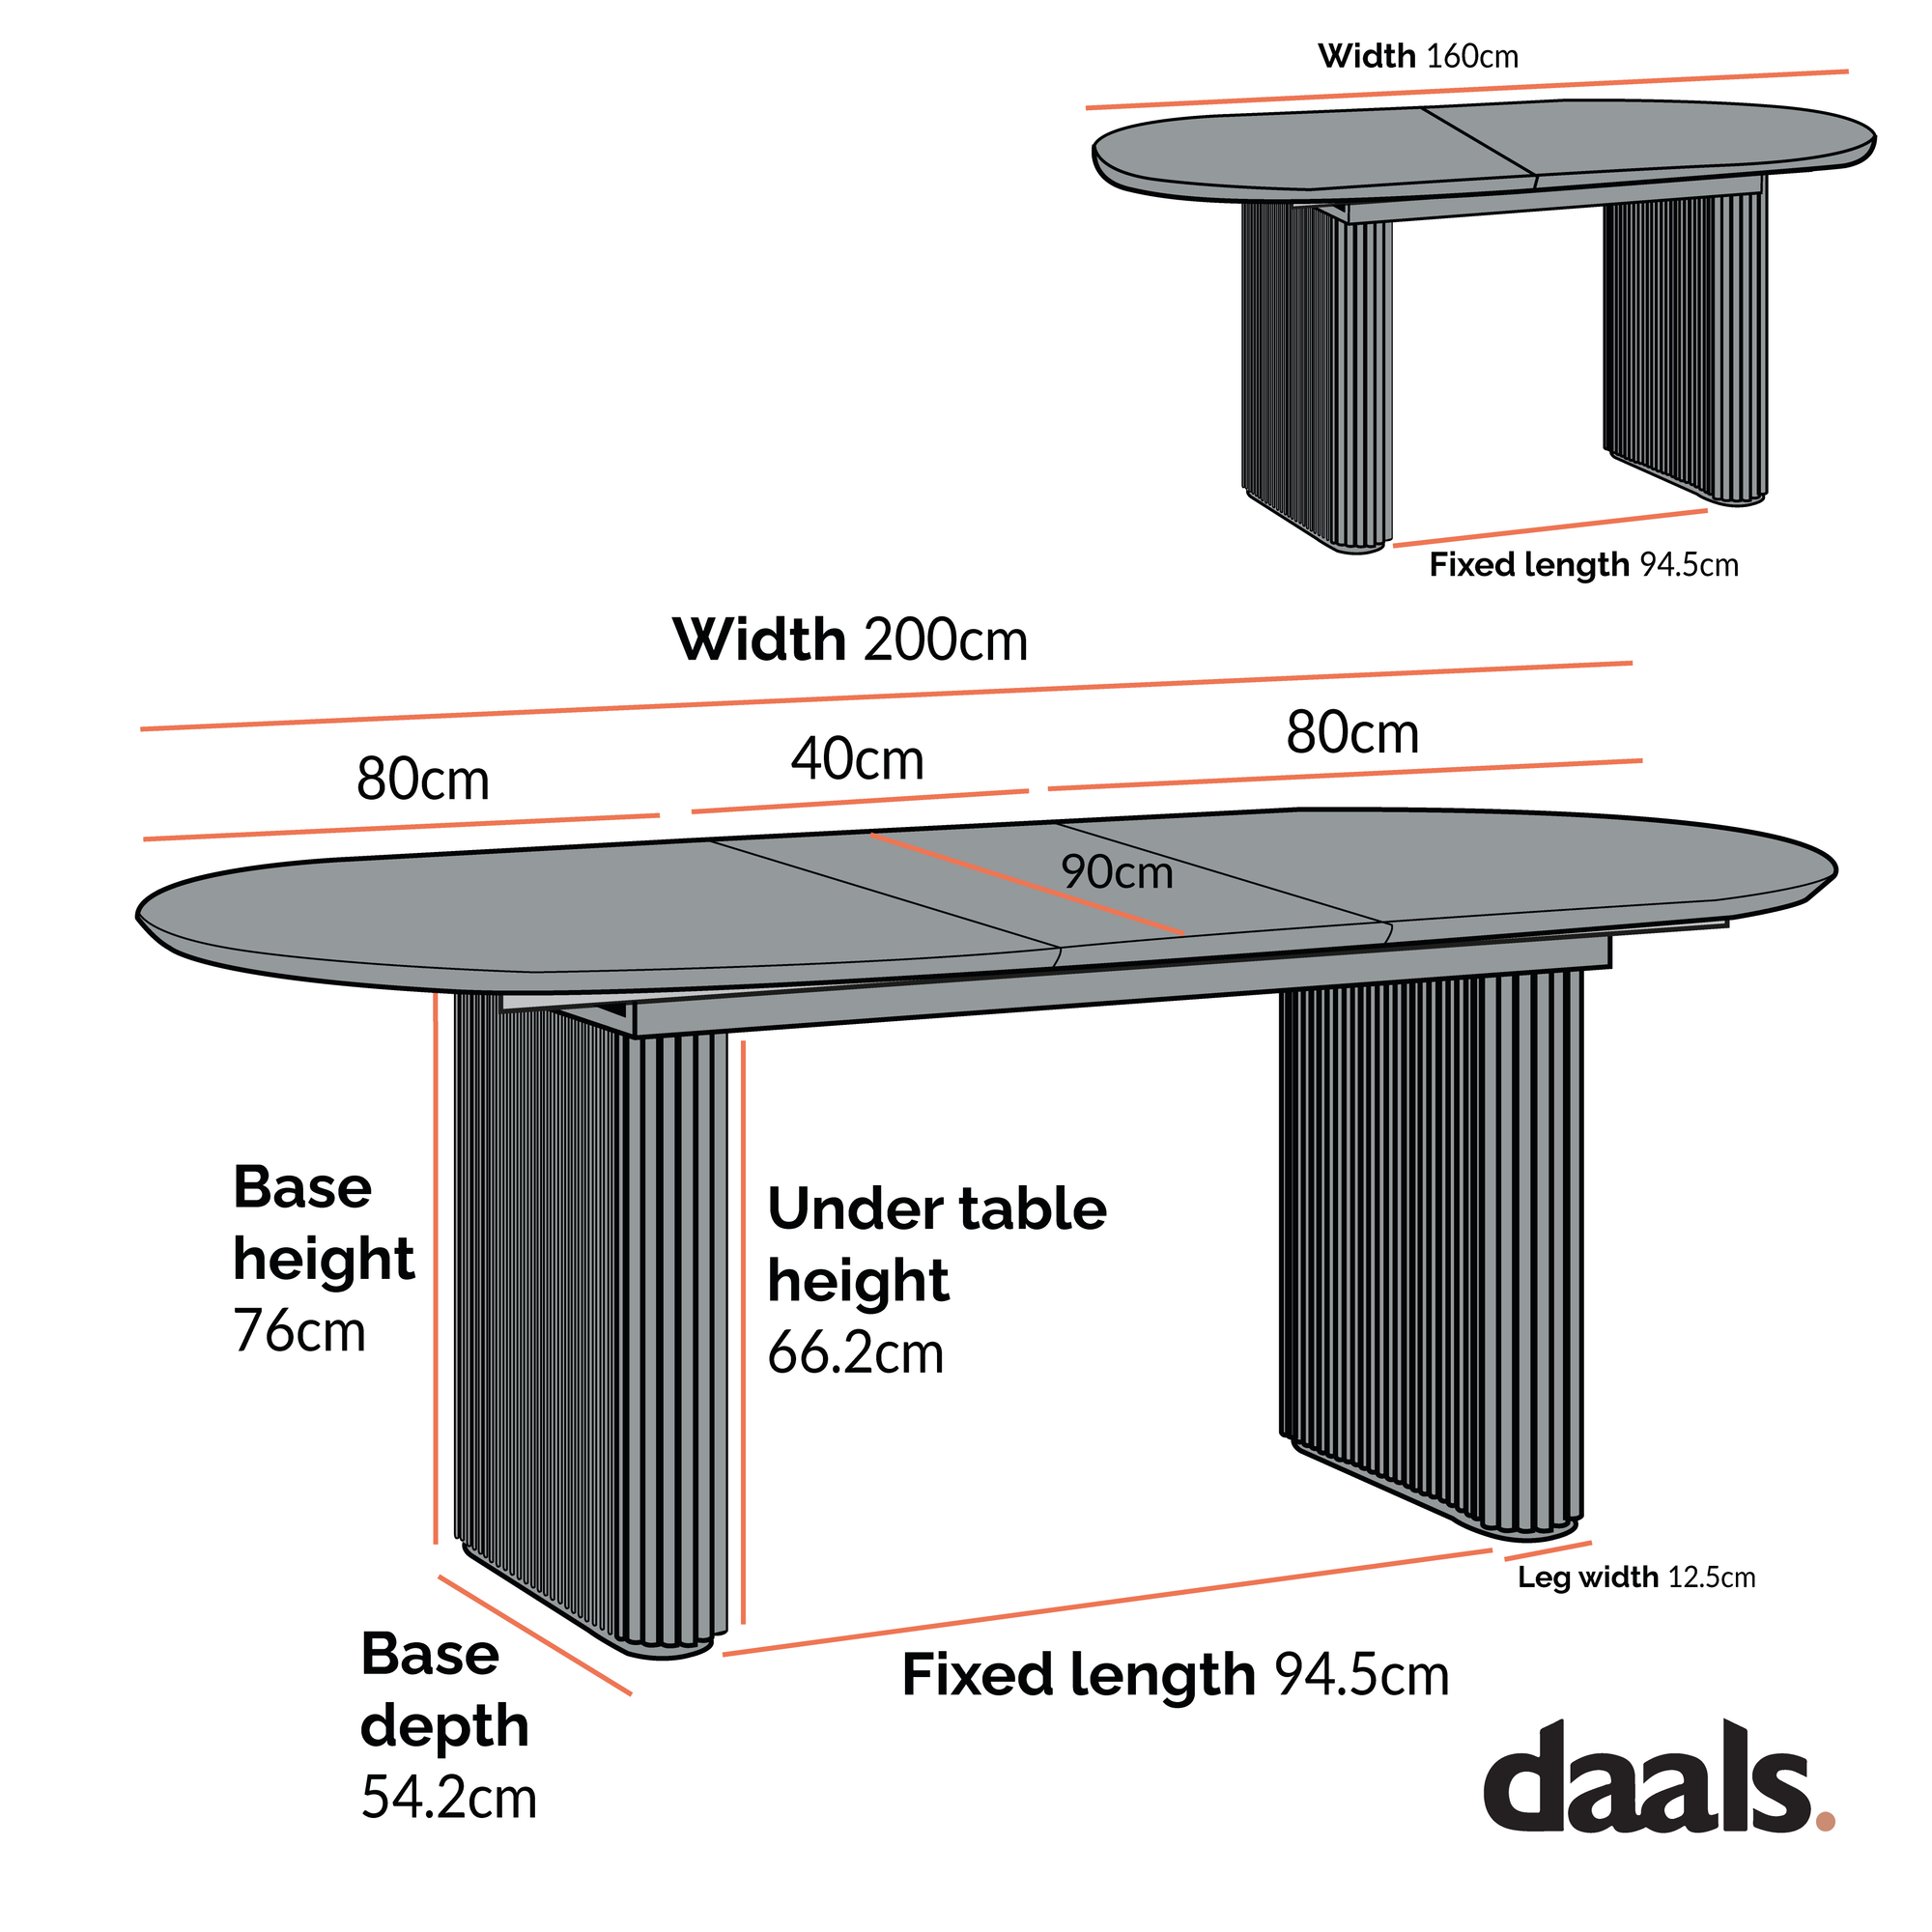 Maru Oval 6-8 Seater Extending Oak Pedestal Dining Table, Oak